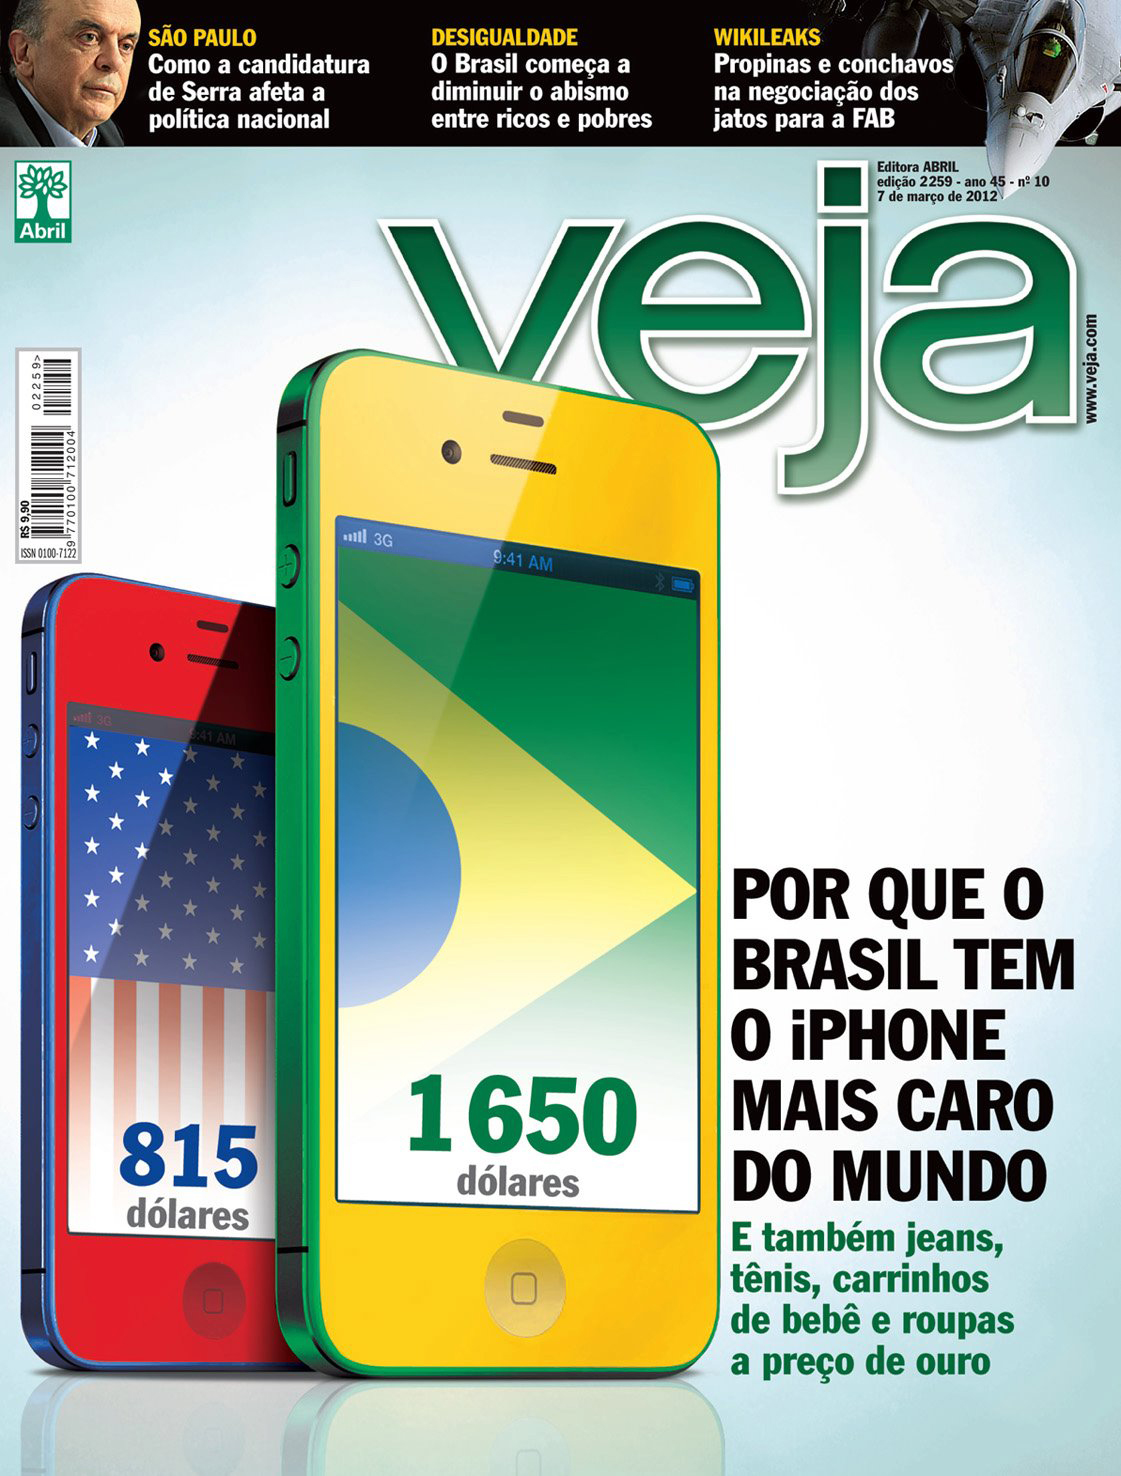 iPhone mais caro do mundo - capa da VEJA